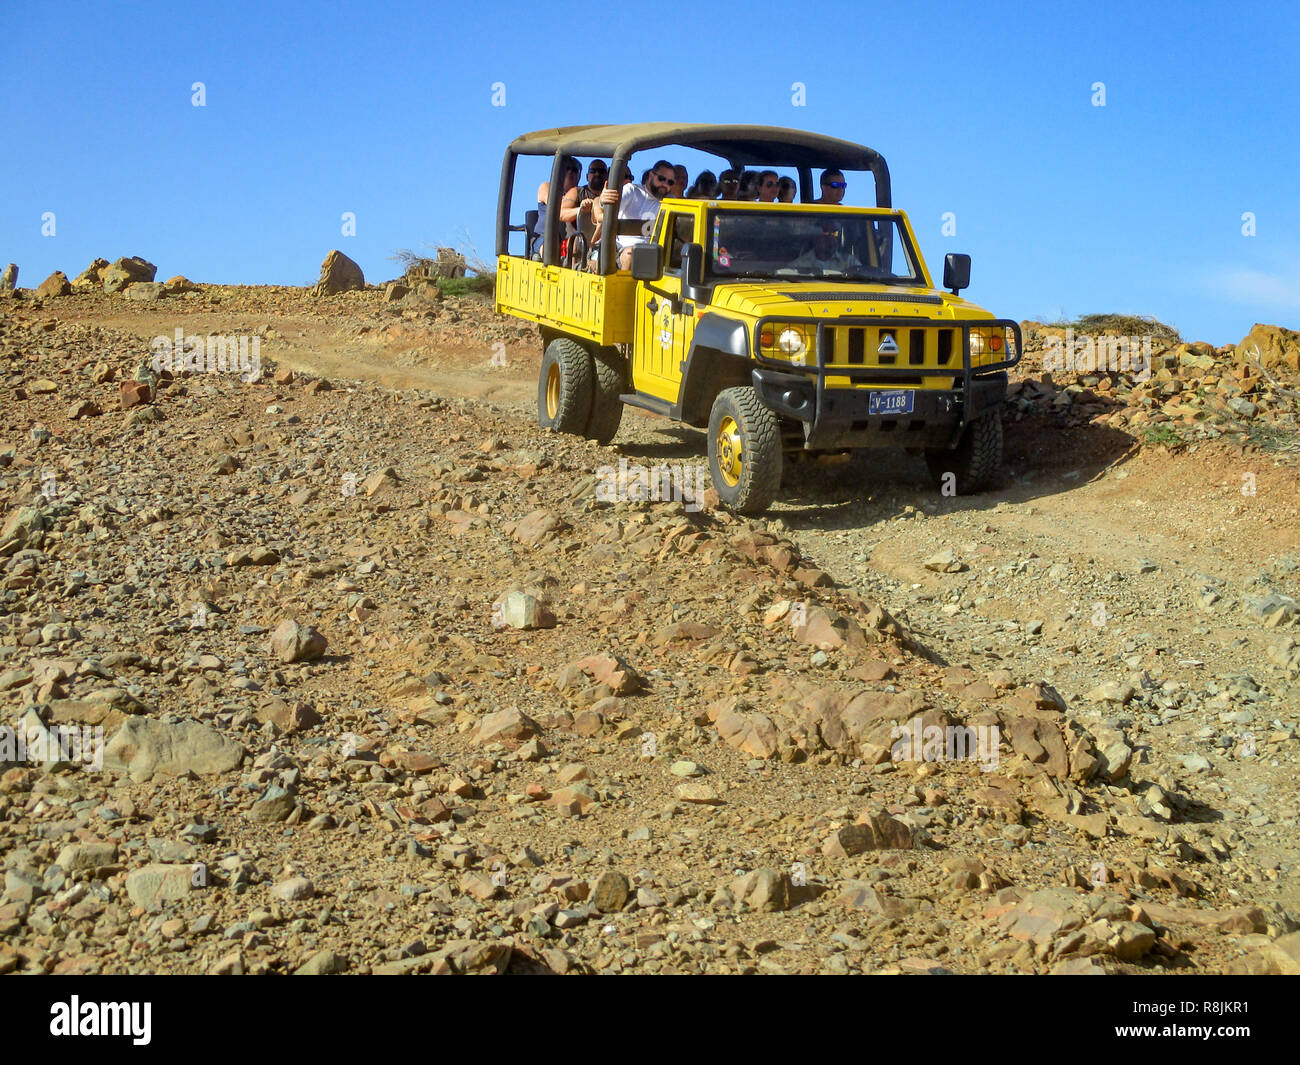 Quatre roues motrices camion emmène les touristes à d'attractions dans le Parc national Arikok Aruba - Aruba en désert robuste Banque D'Images